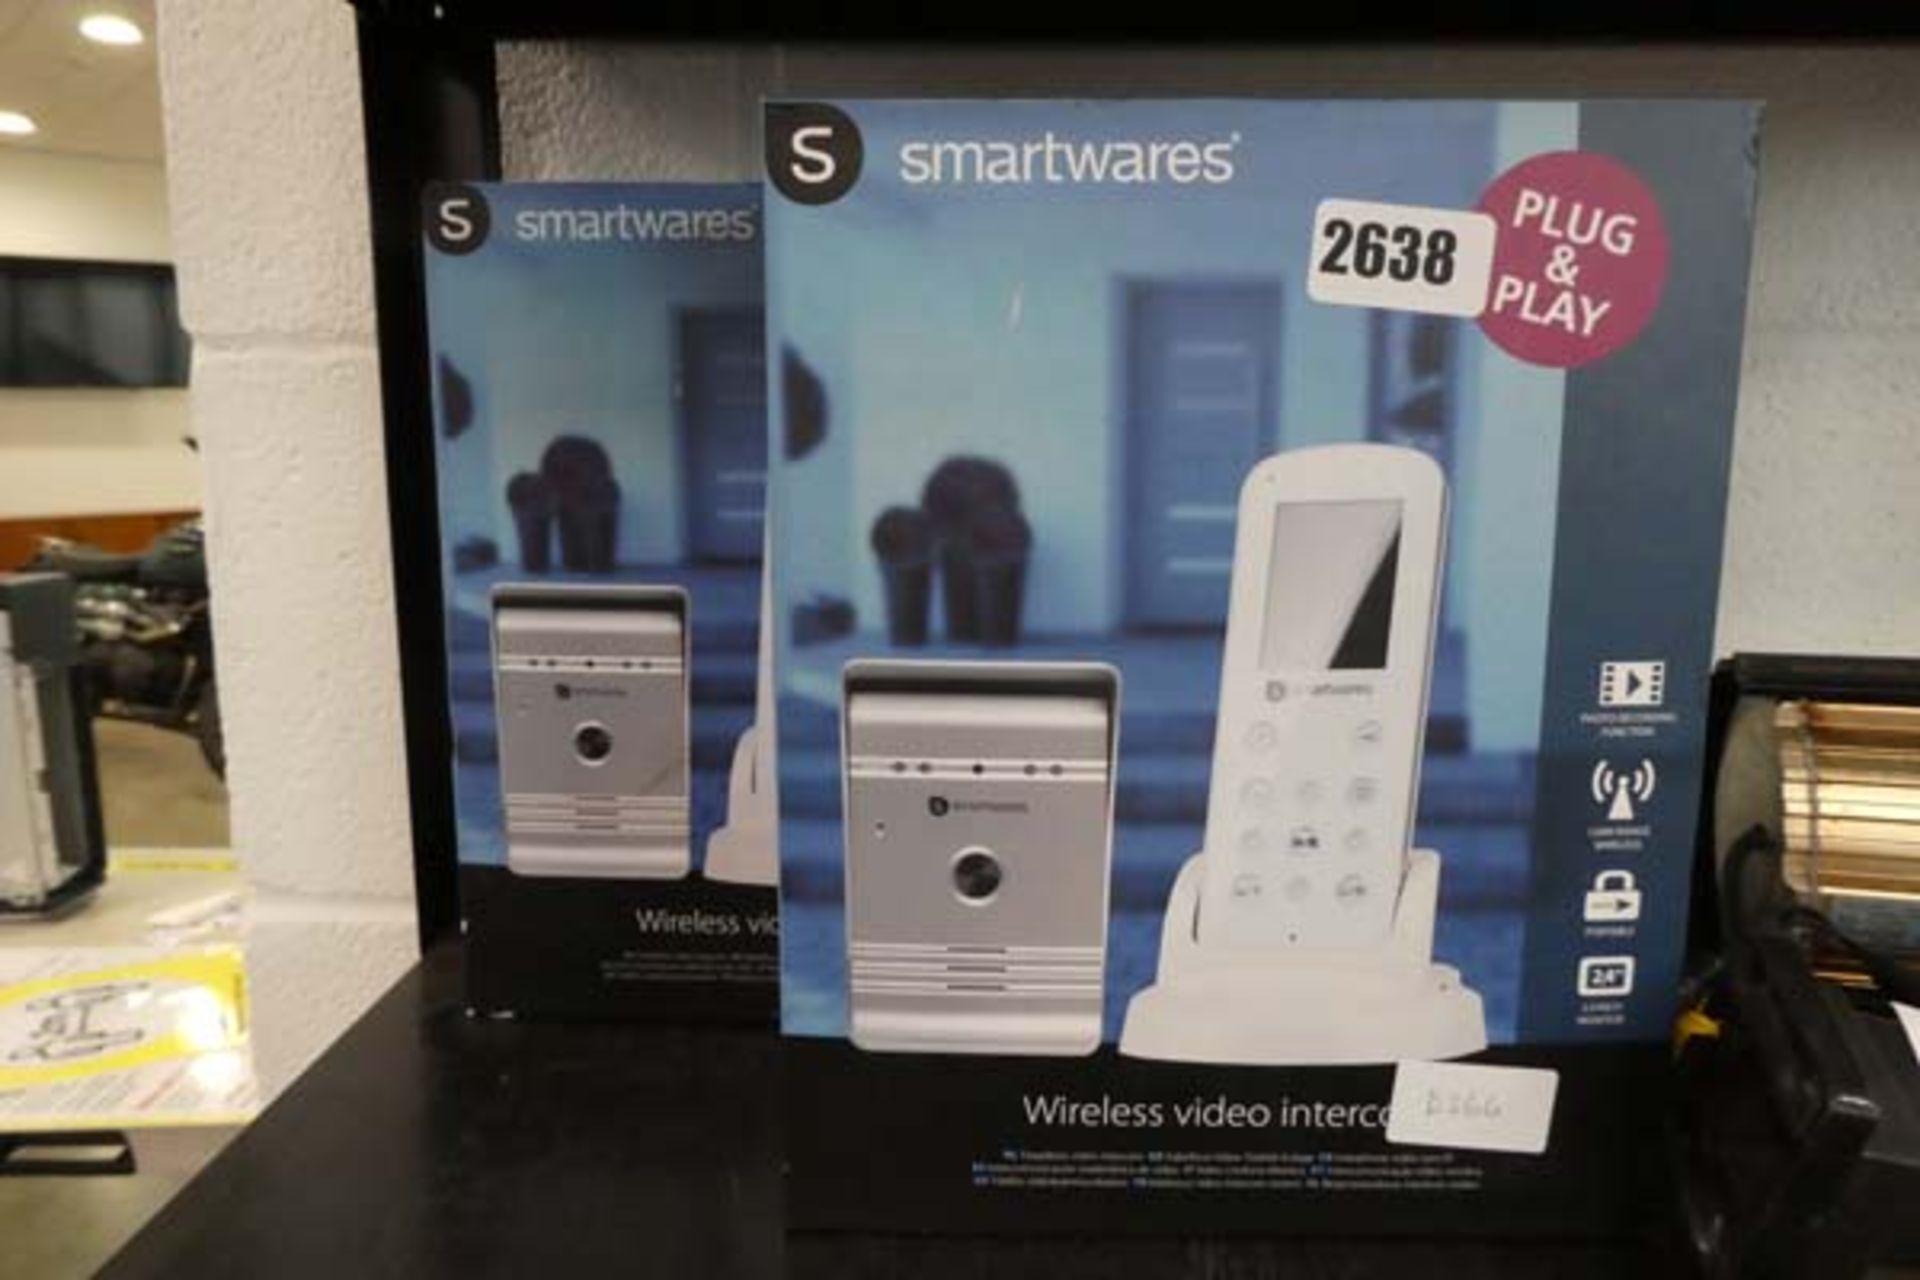 2x Smartwares plug & play video doorbell kits